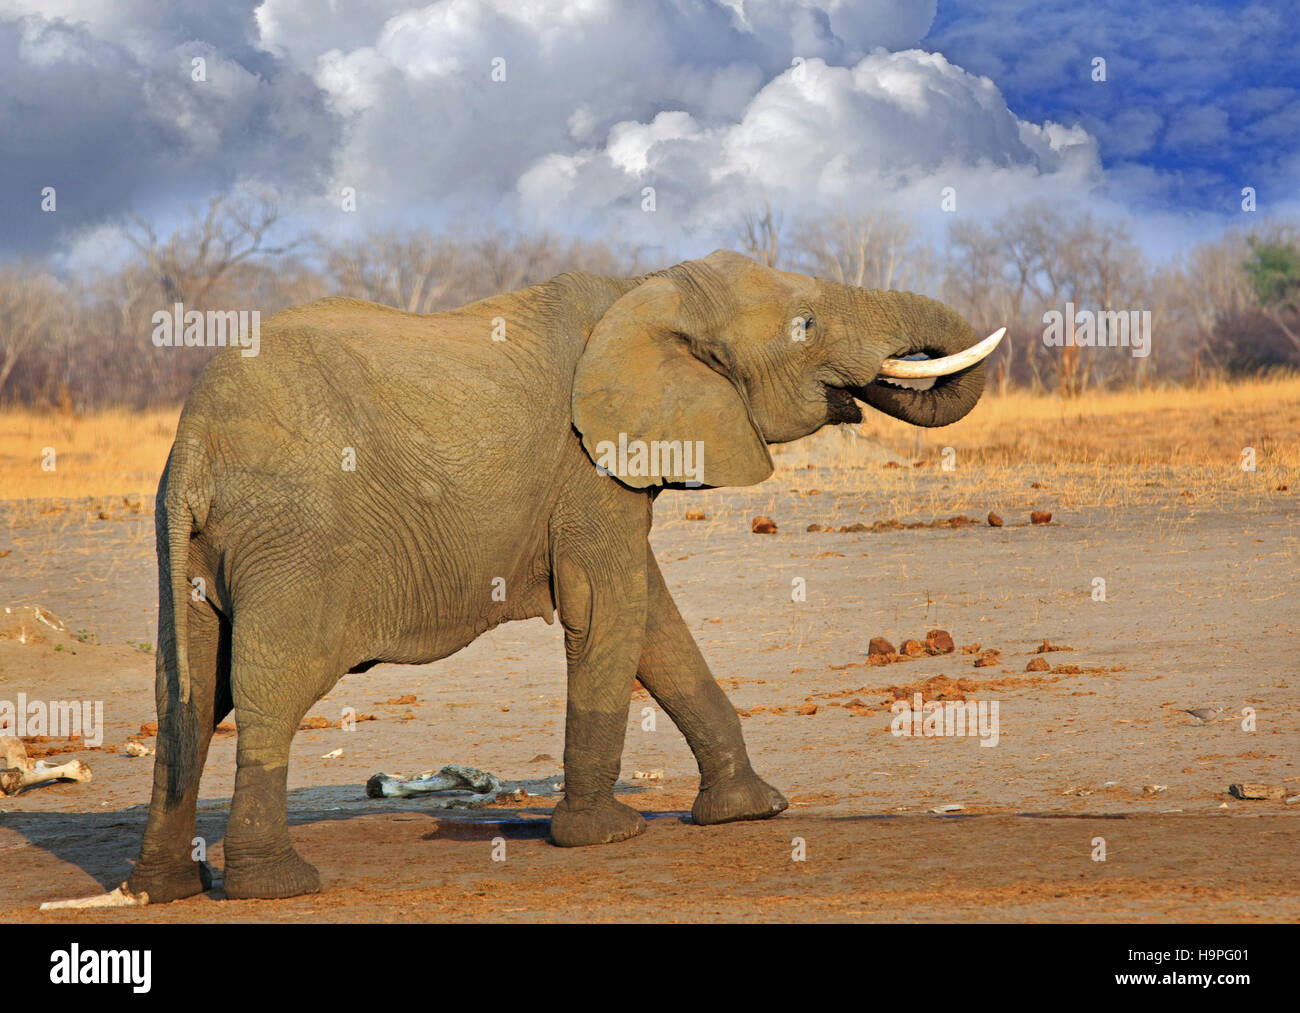 Afrikanischer Elefant steht auf der trockenen afrikanischen Ebene mit Rüssel in den Mund gekräuselt, gegen einen wolkigen blauen Himmel Stockfoto